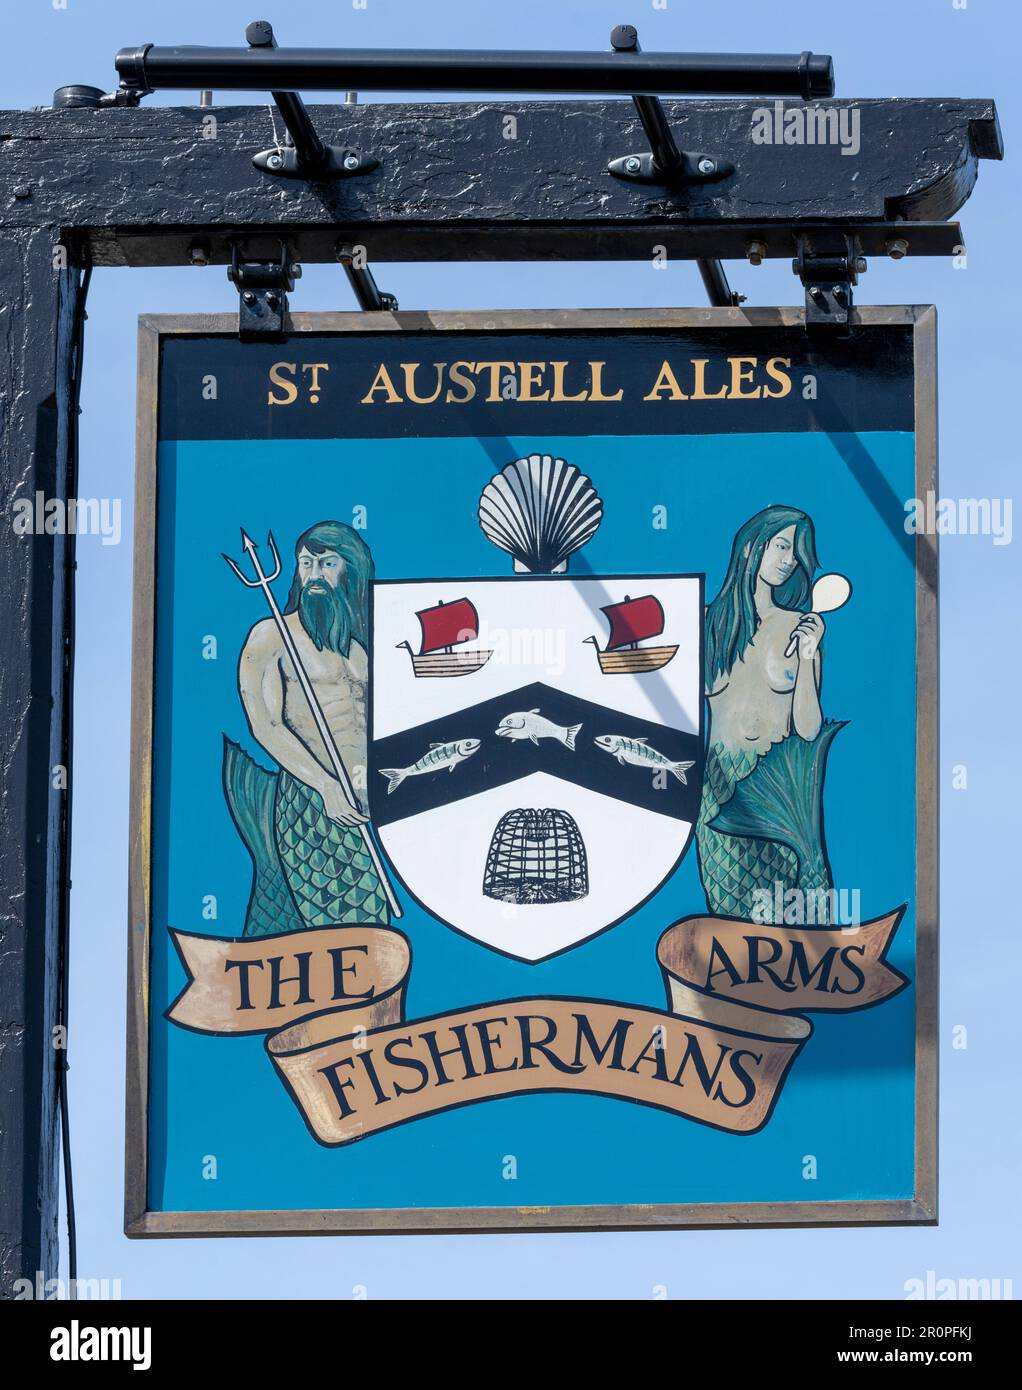 Panneau de pub suspendu traditionnel à The Fishermans Arms - a St Austell Ales public House, Newlyn, Penzance, Cornwall, Angleterre, ROYAUME-UNI Banque D'Images